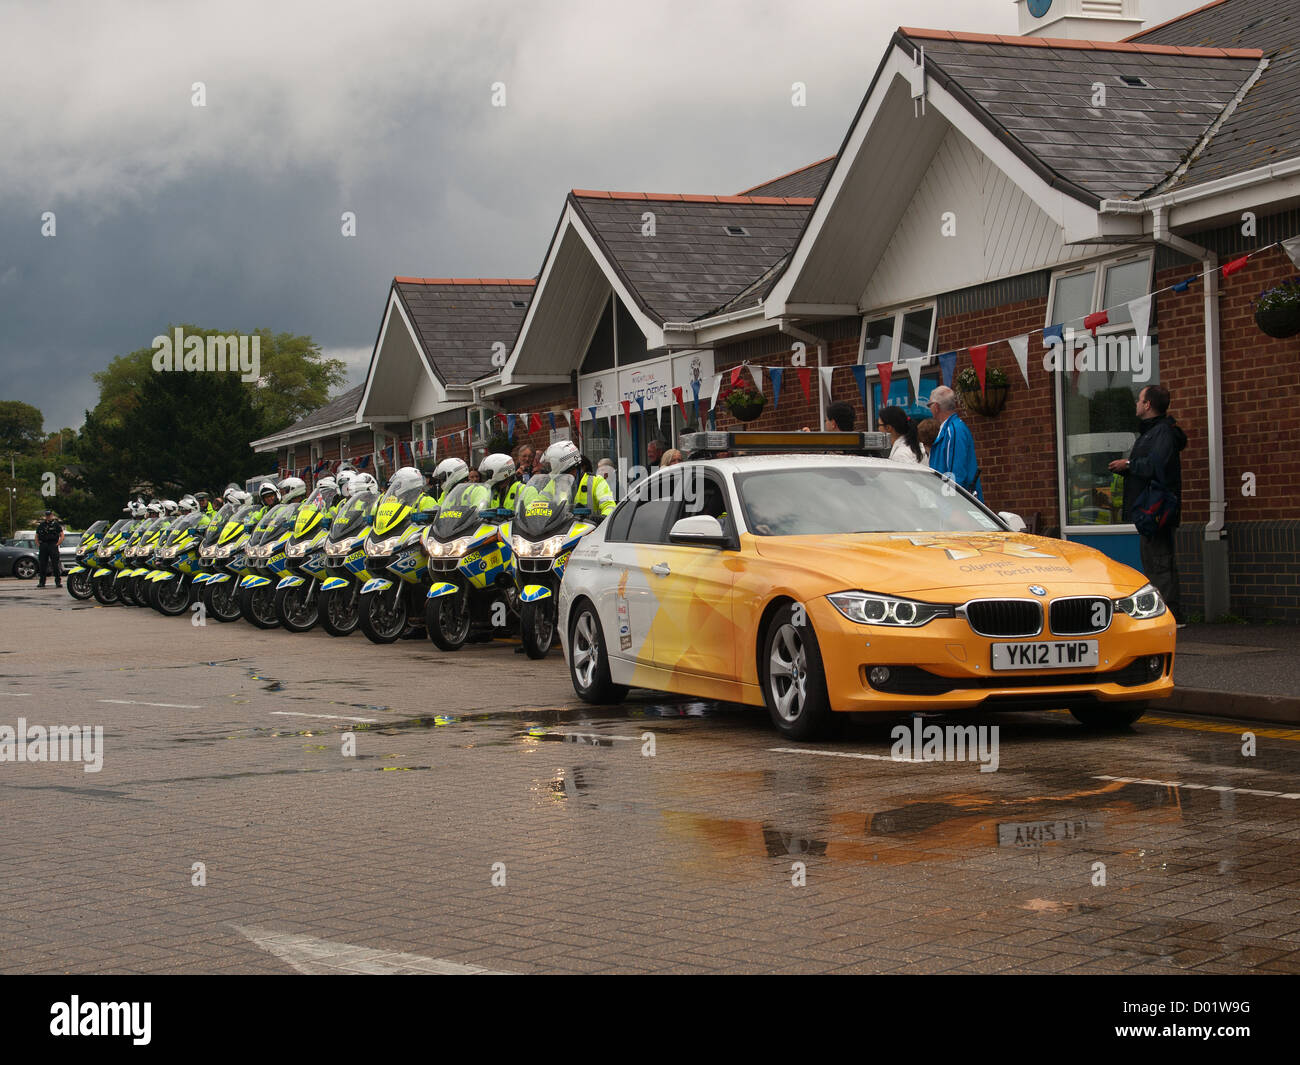 Torcia olimpica Lymington Hampshire England Regno Unito - supporto auto e moto della polizia in attesa di guidare sul Wightlink traghetto per auto Foto Stock